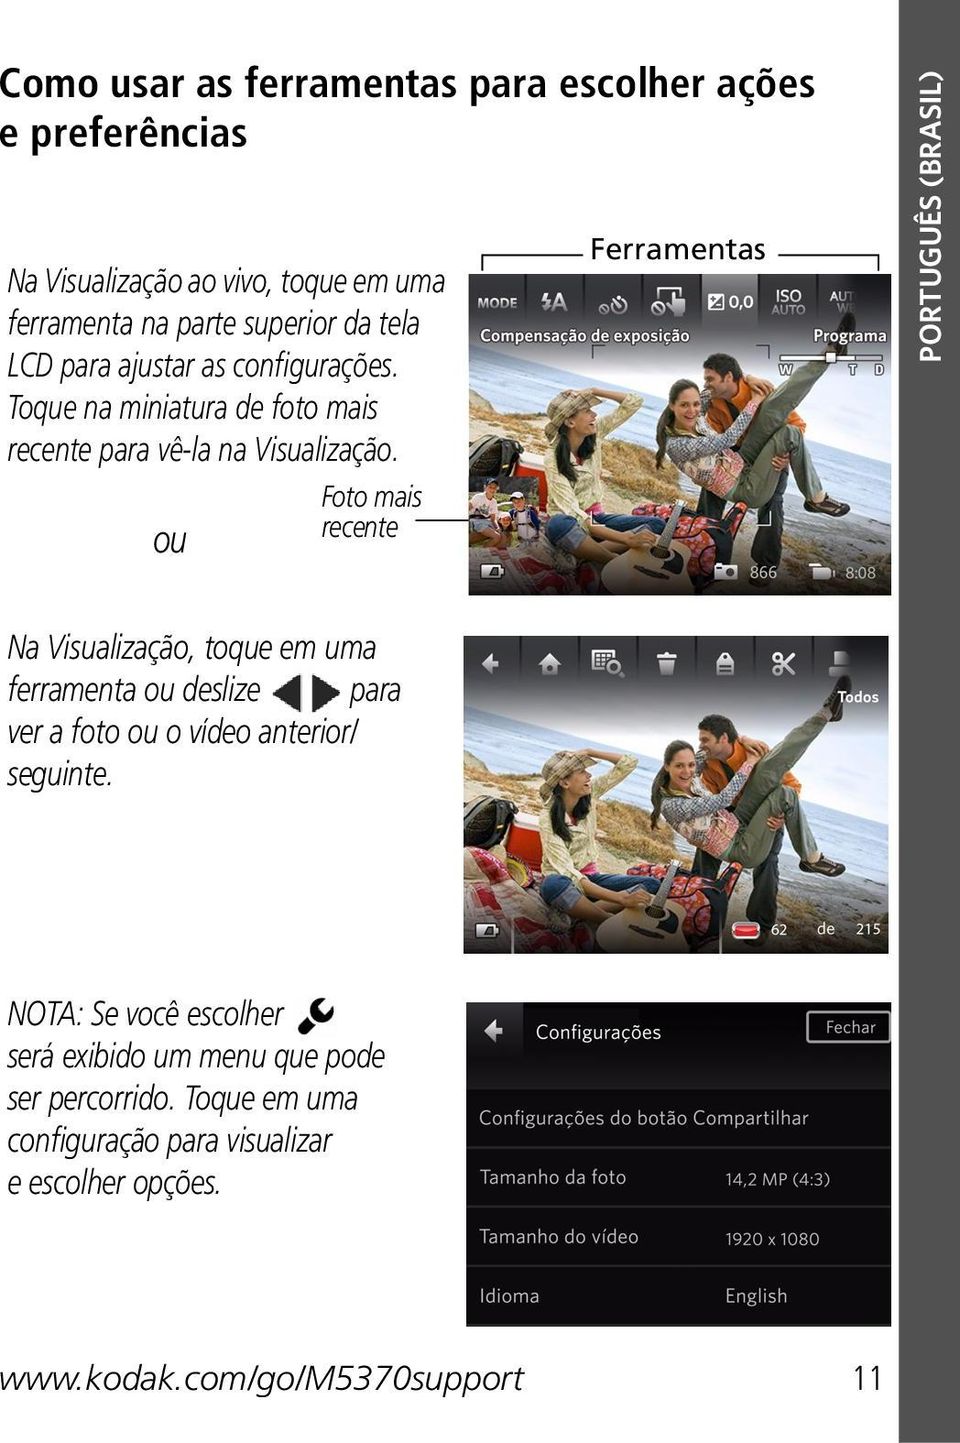 Foto mais ou recente Ferramentas PORTUGUÊS (BRASIL) Na Visualização, toque em uma ferramenta ou deslize para ver a foto ou o vídeo